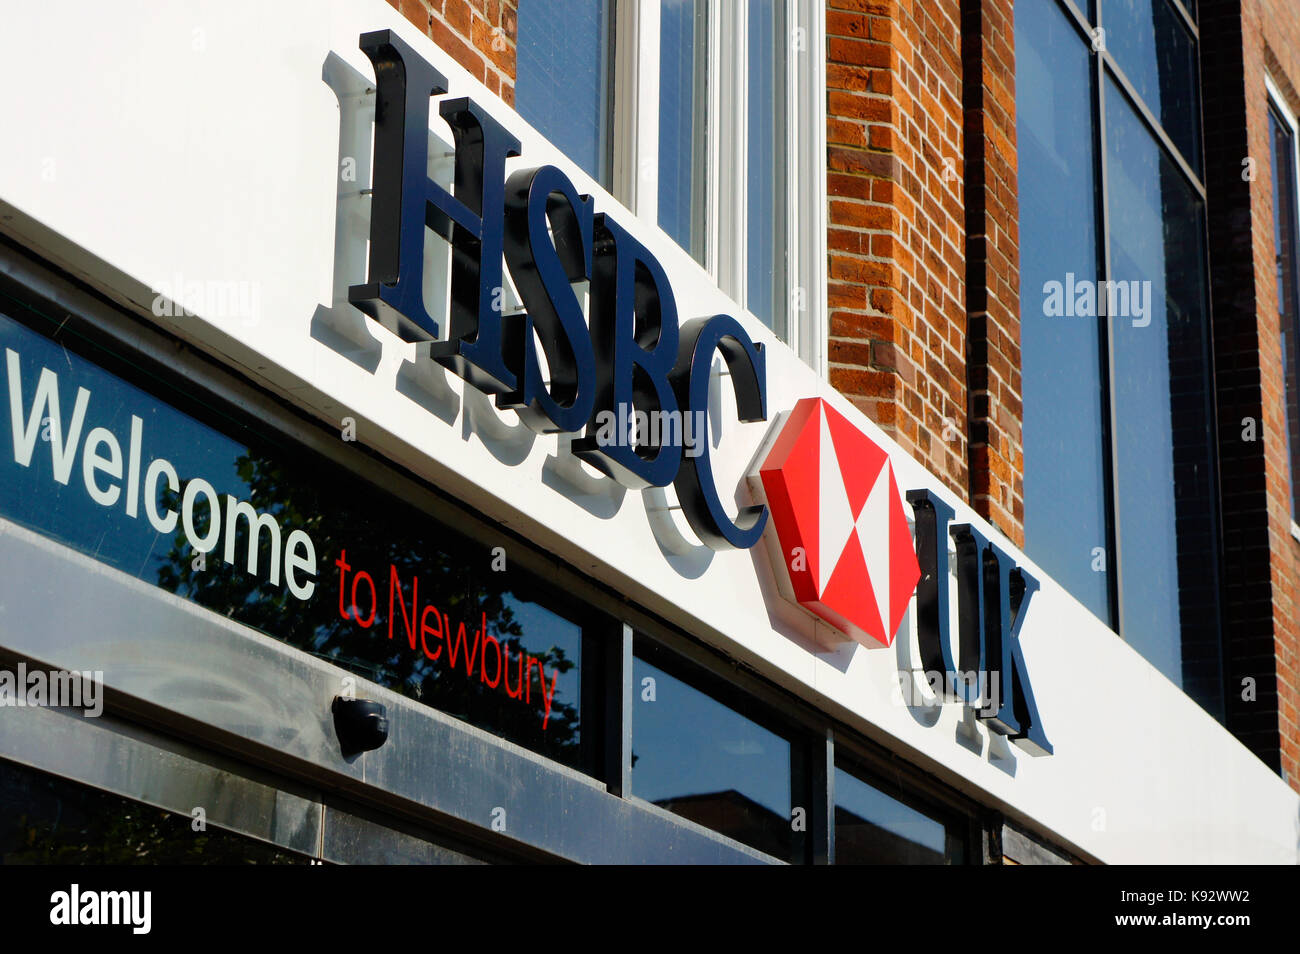 Newbury, UK - August 27 2017:  The exterior of the Newbury branch of HSBC bank Stock Photo